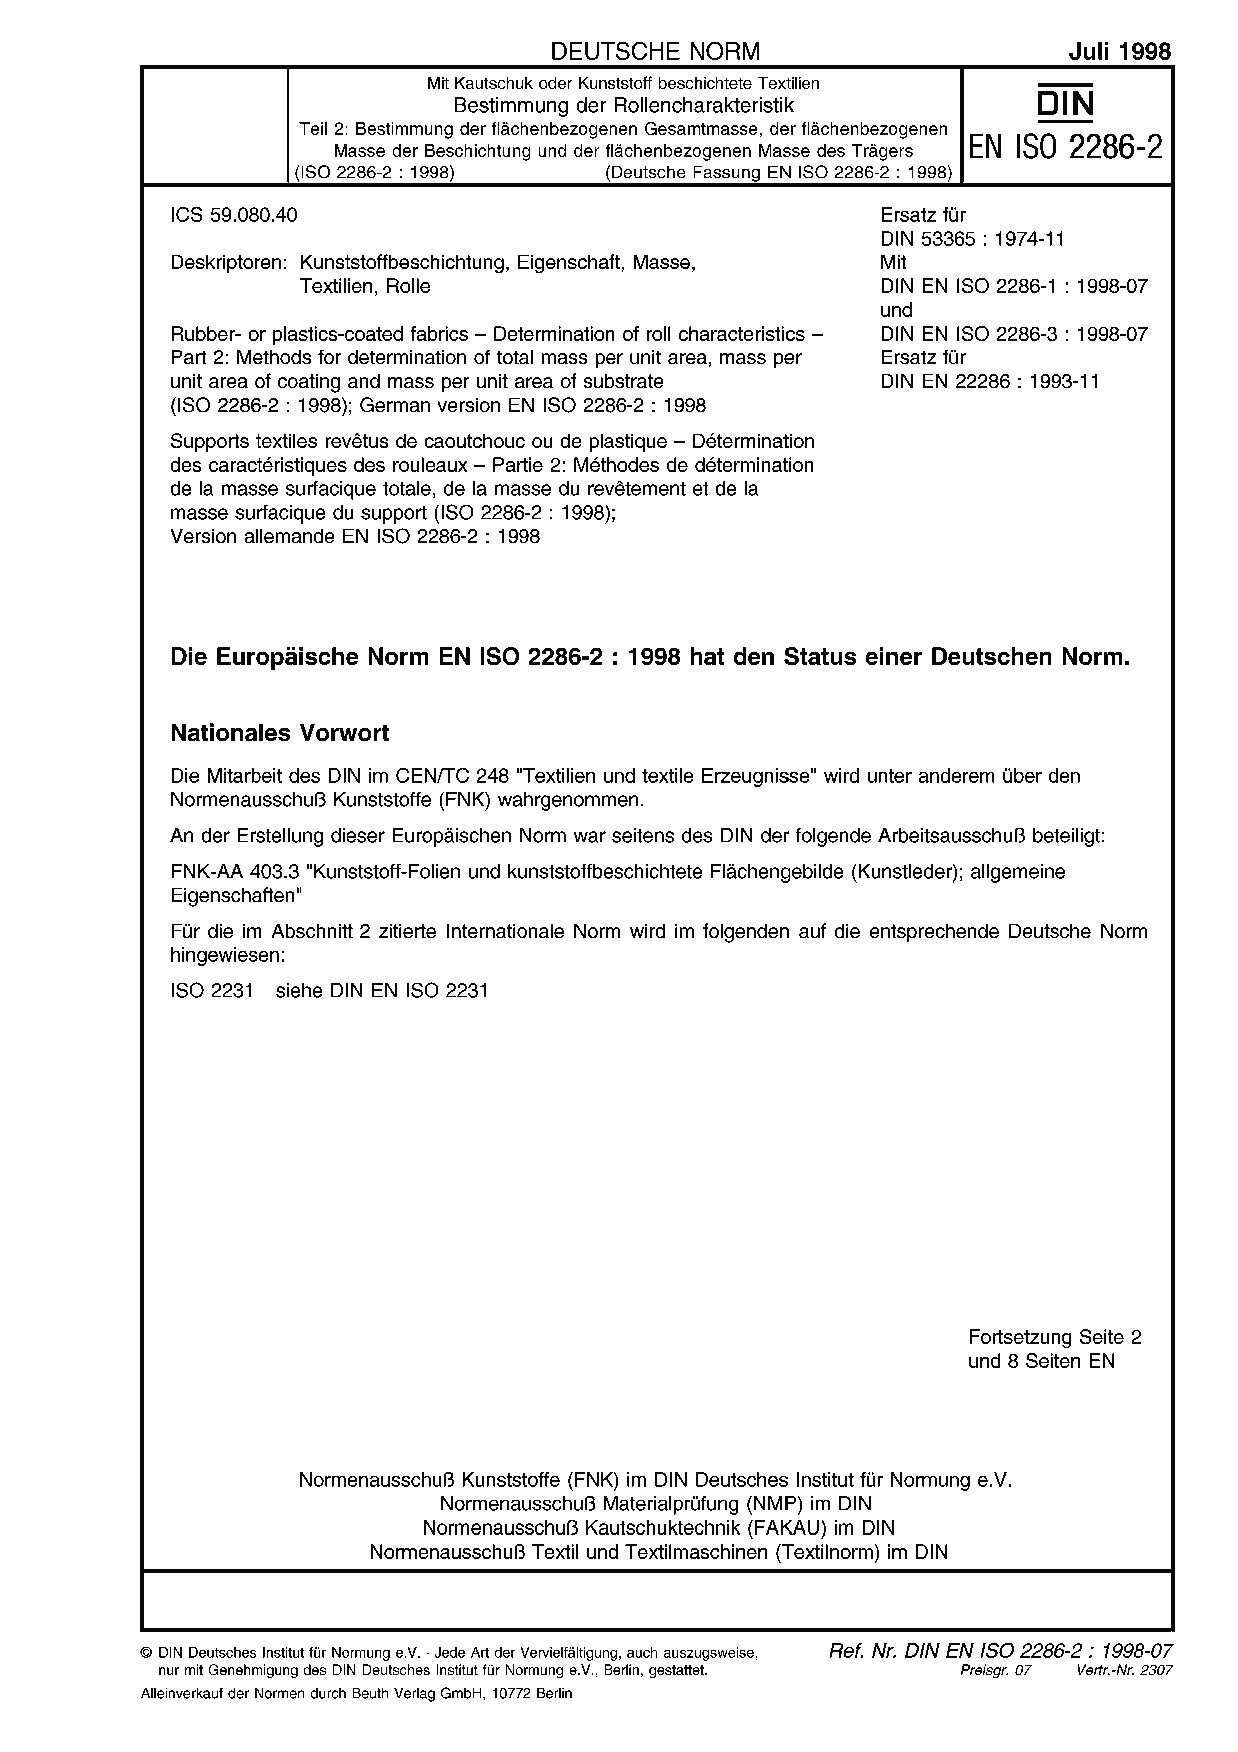 DIN EN ISO 2286-2:1998